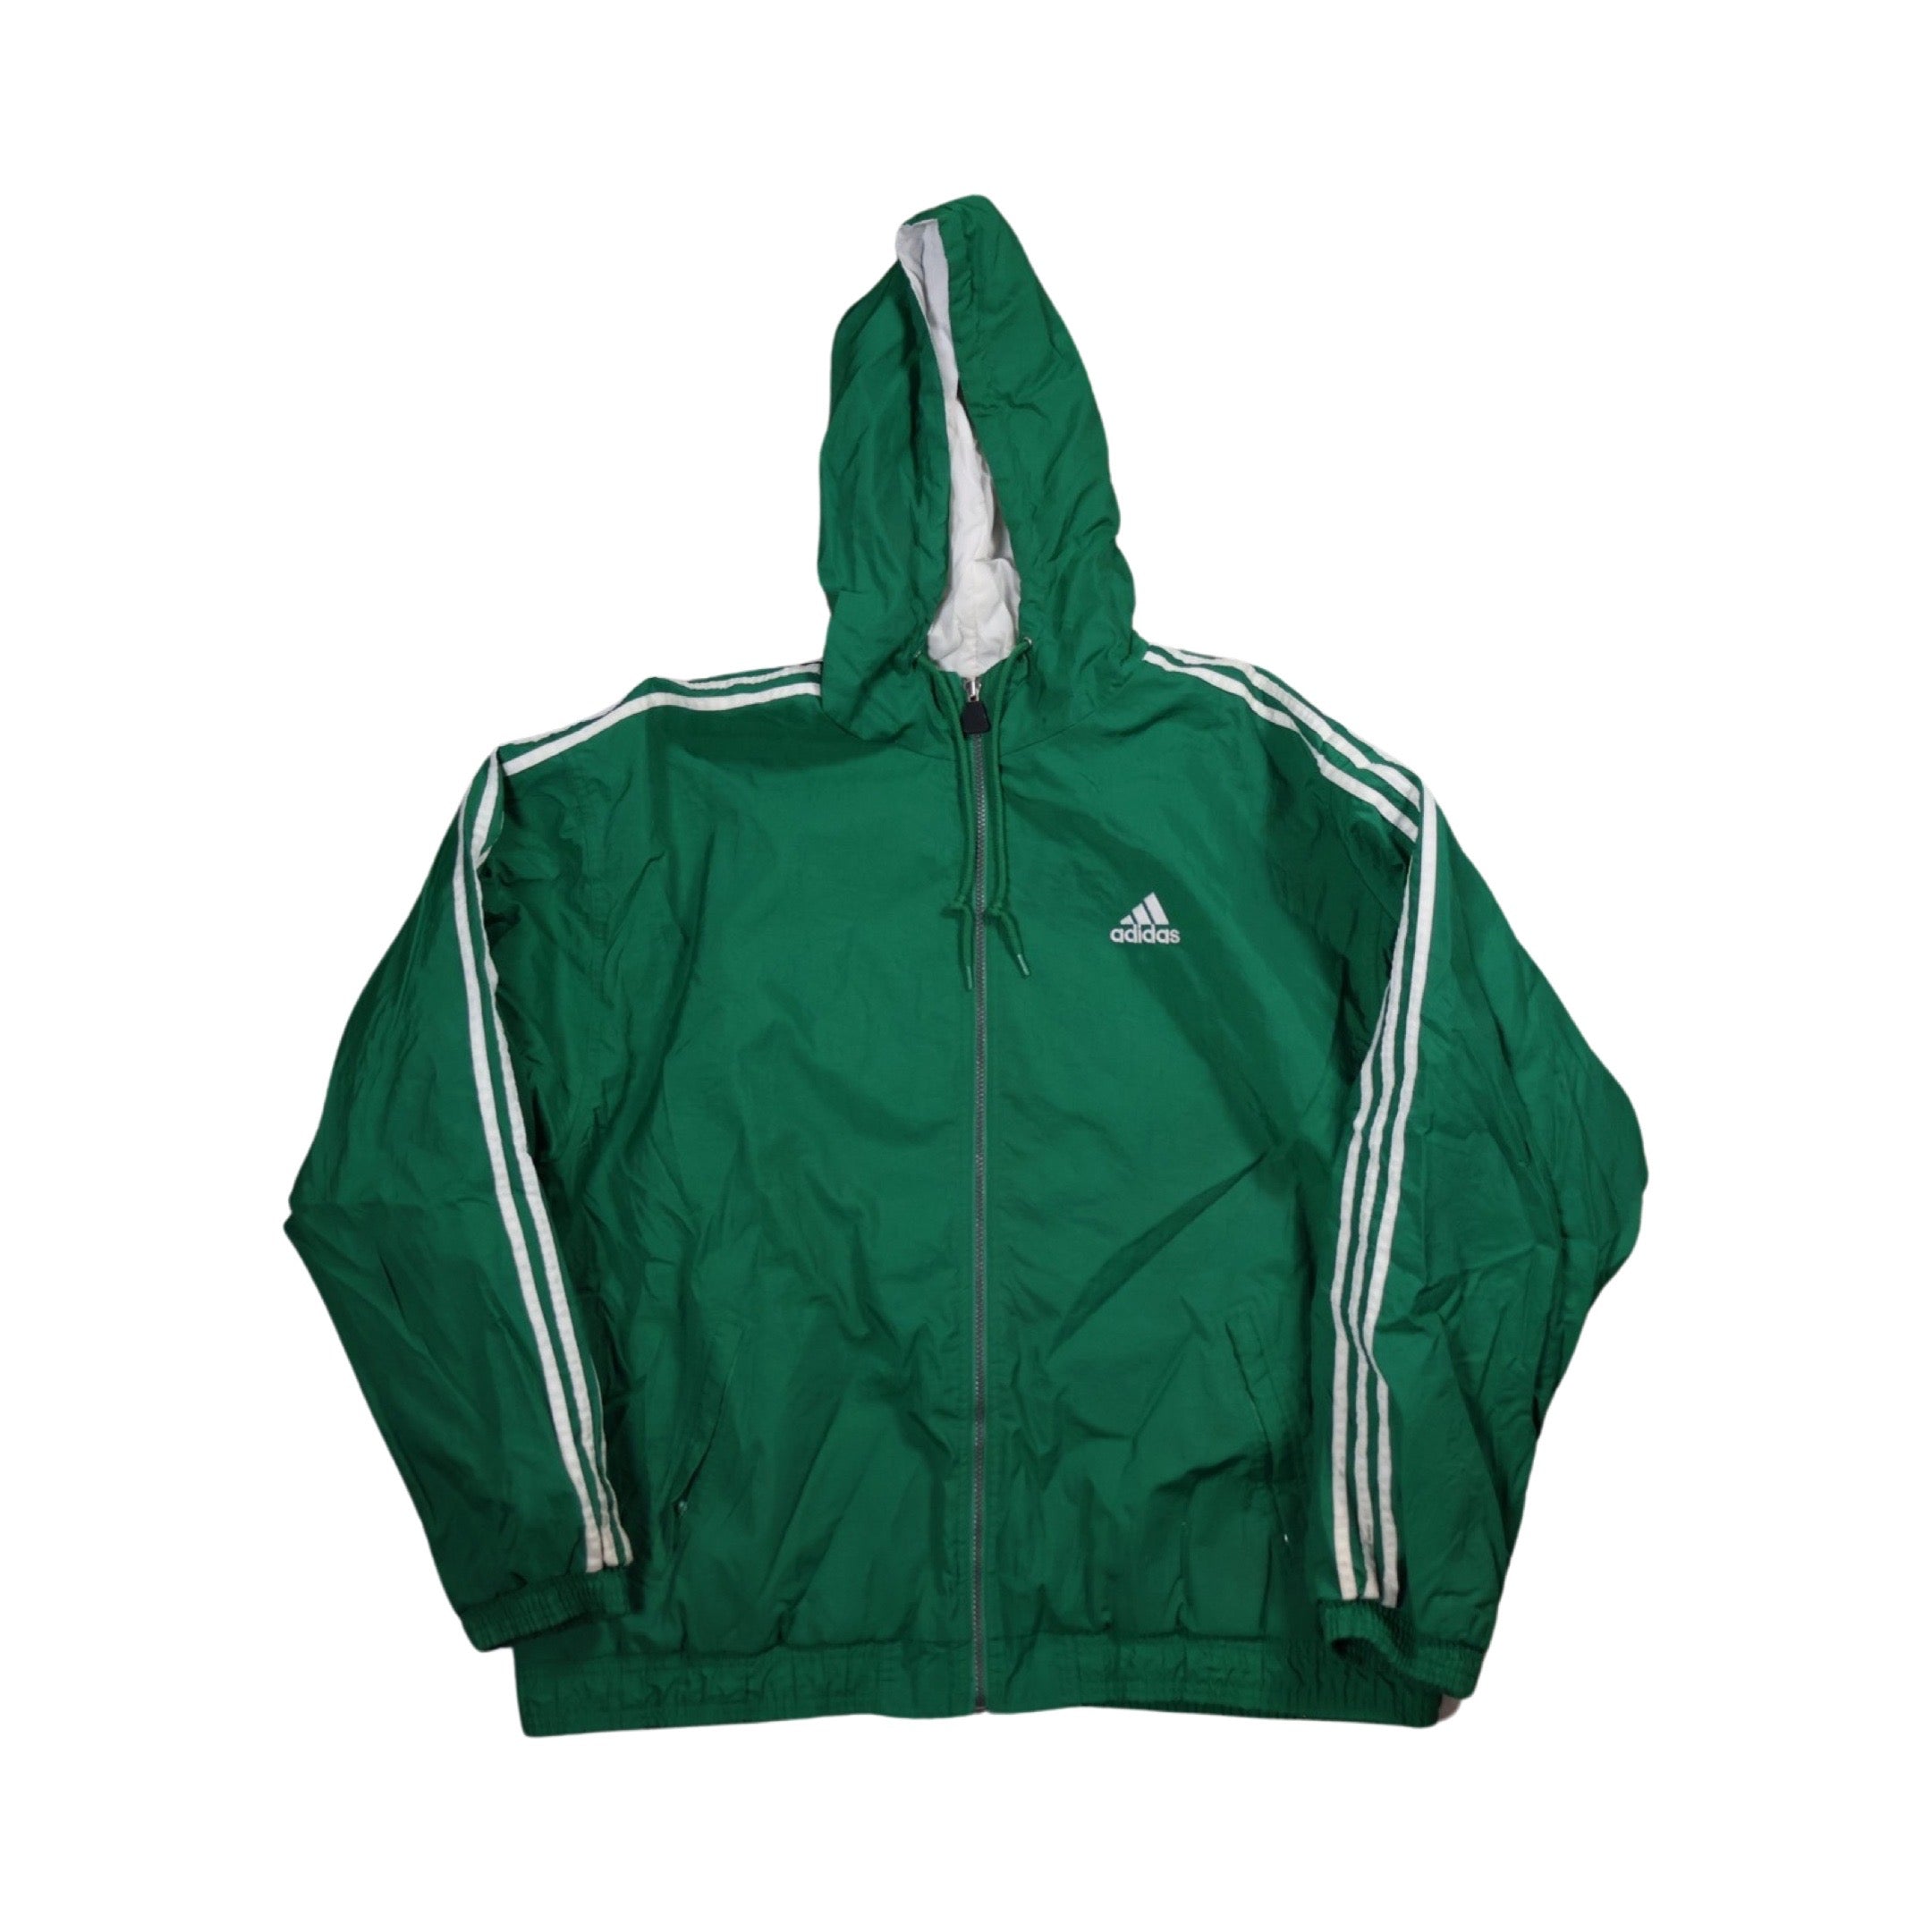 Green Adidas 90s Puffer Jacket (XL)